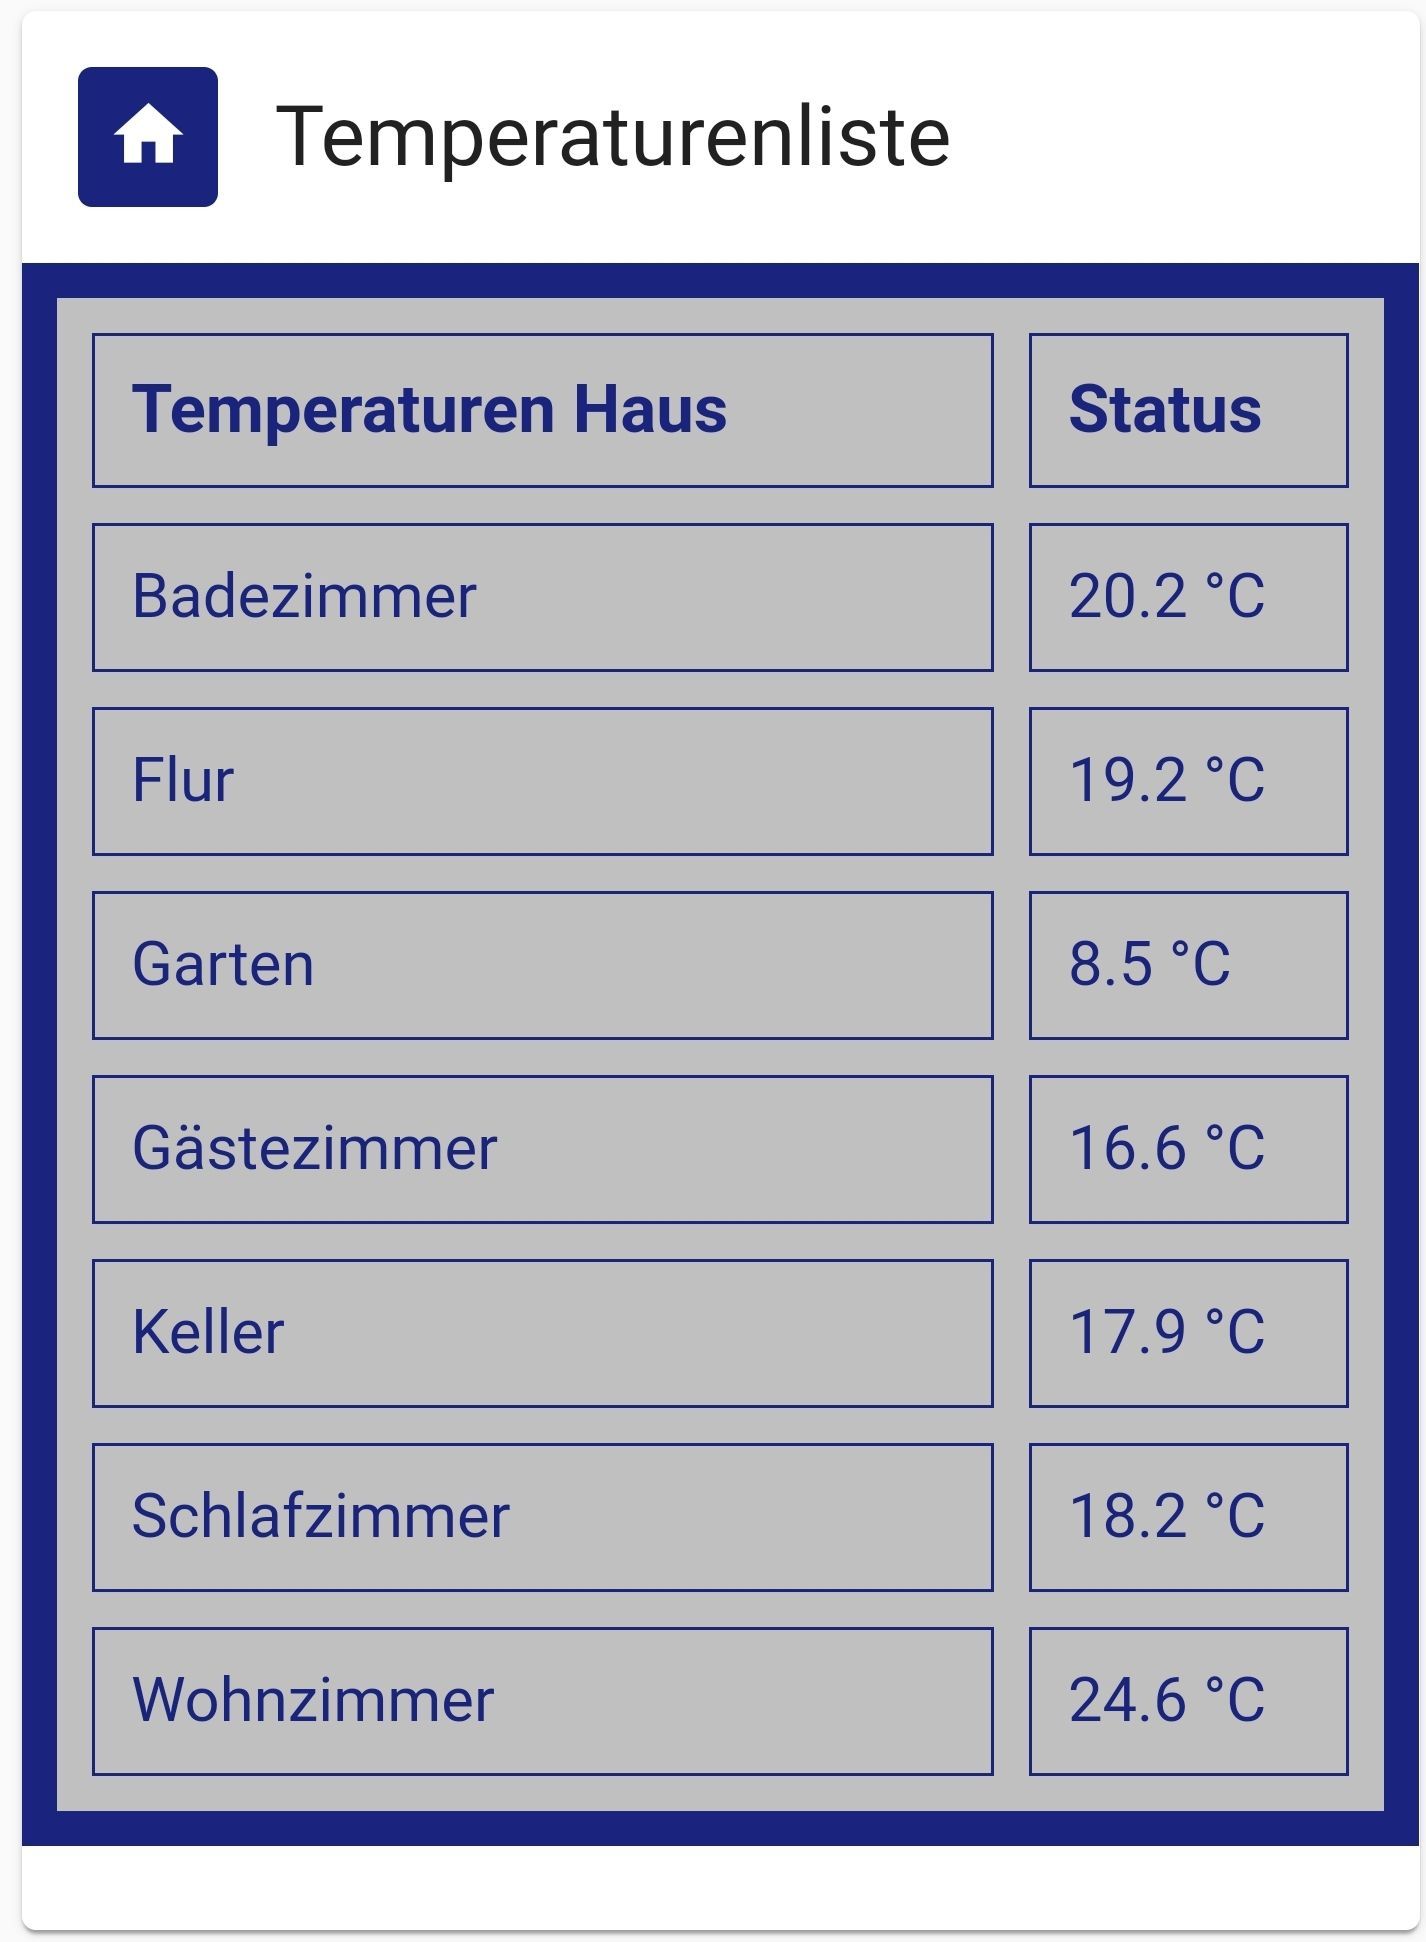 Temperaturenliste.jpg